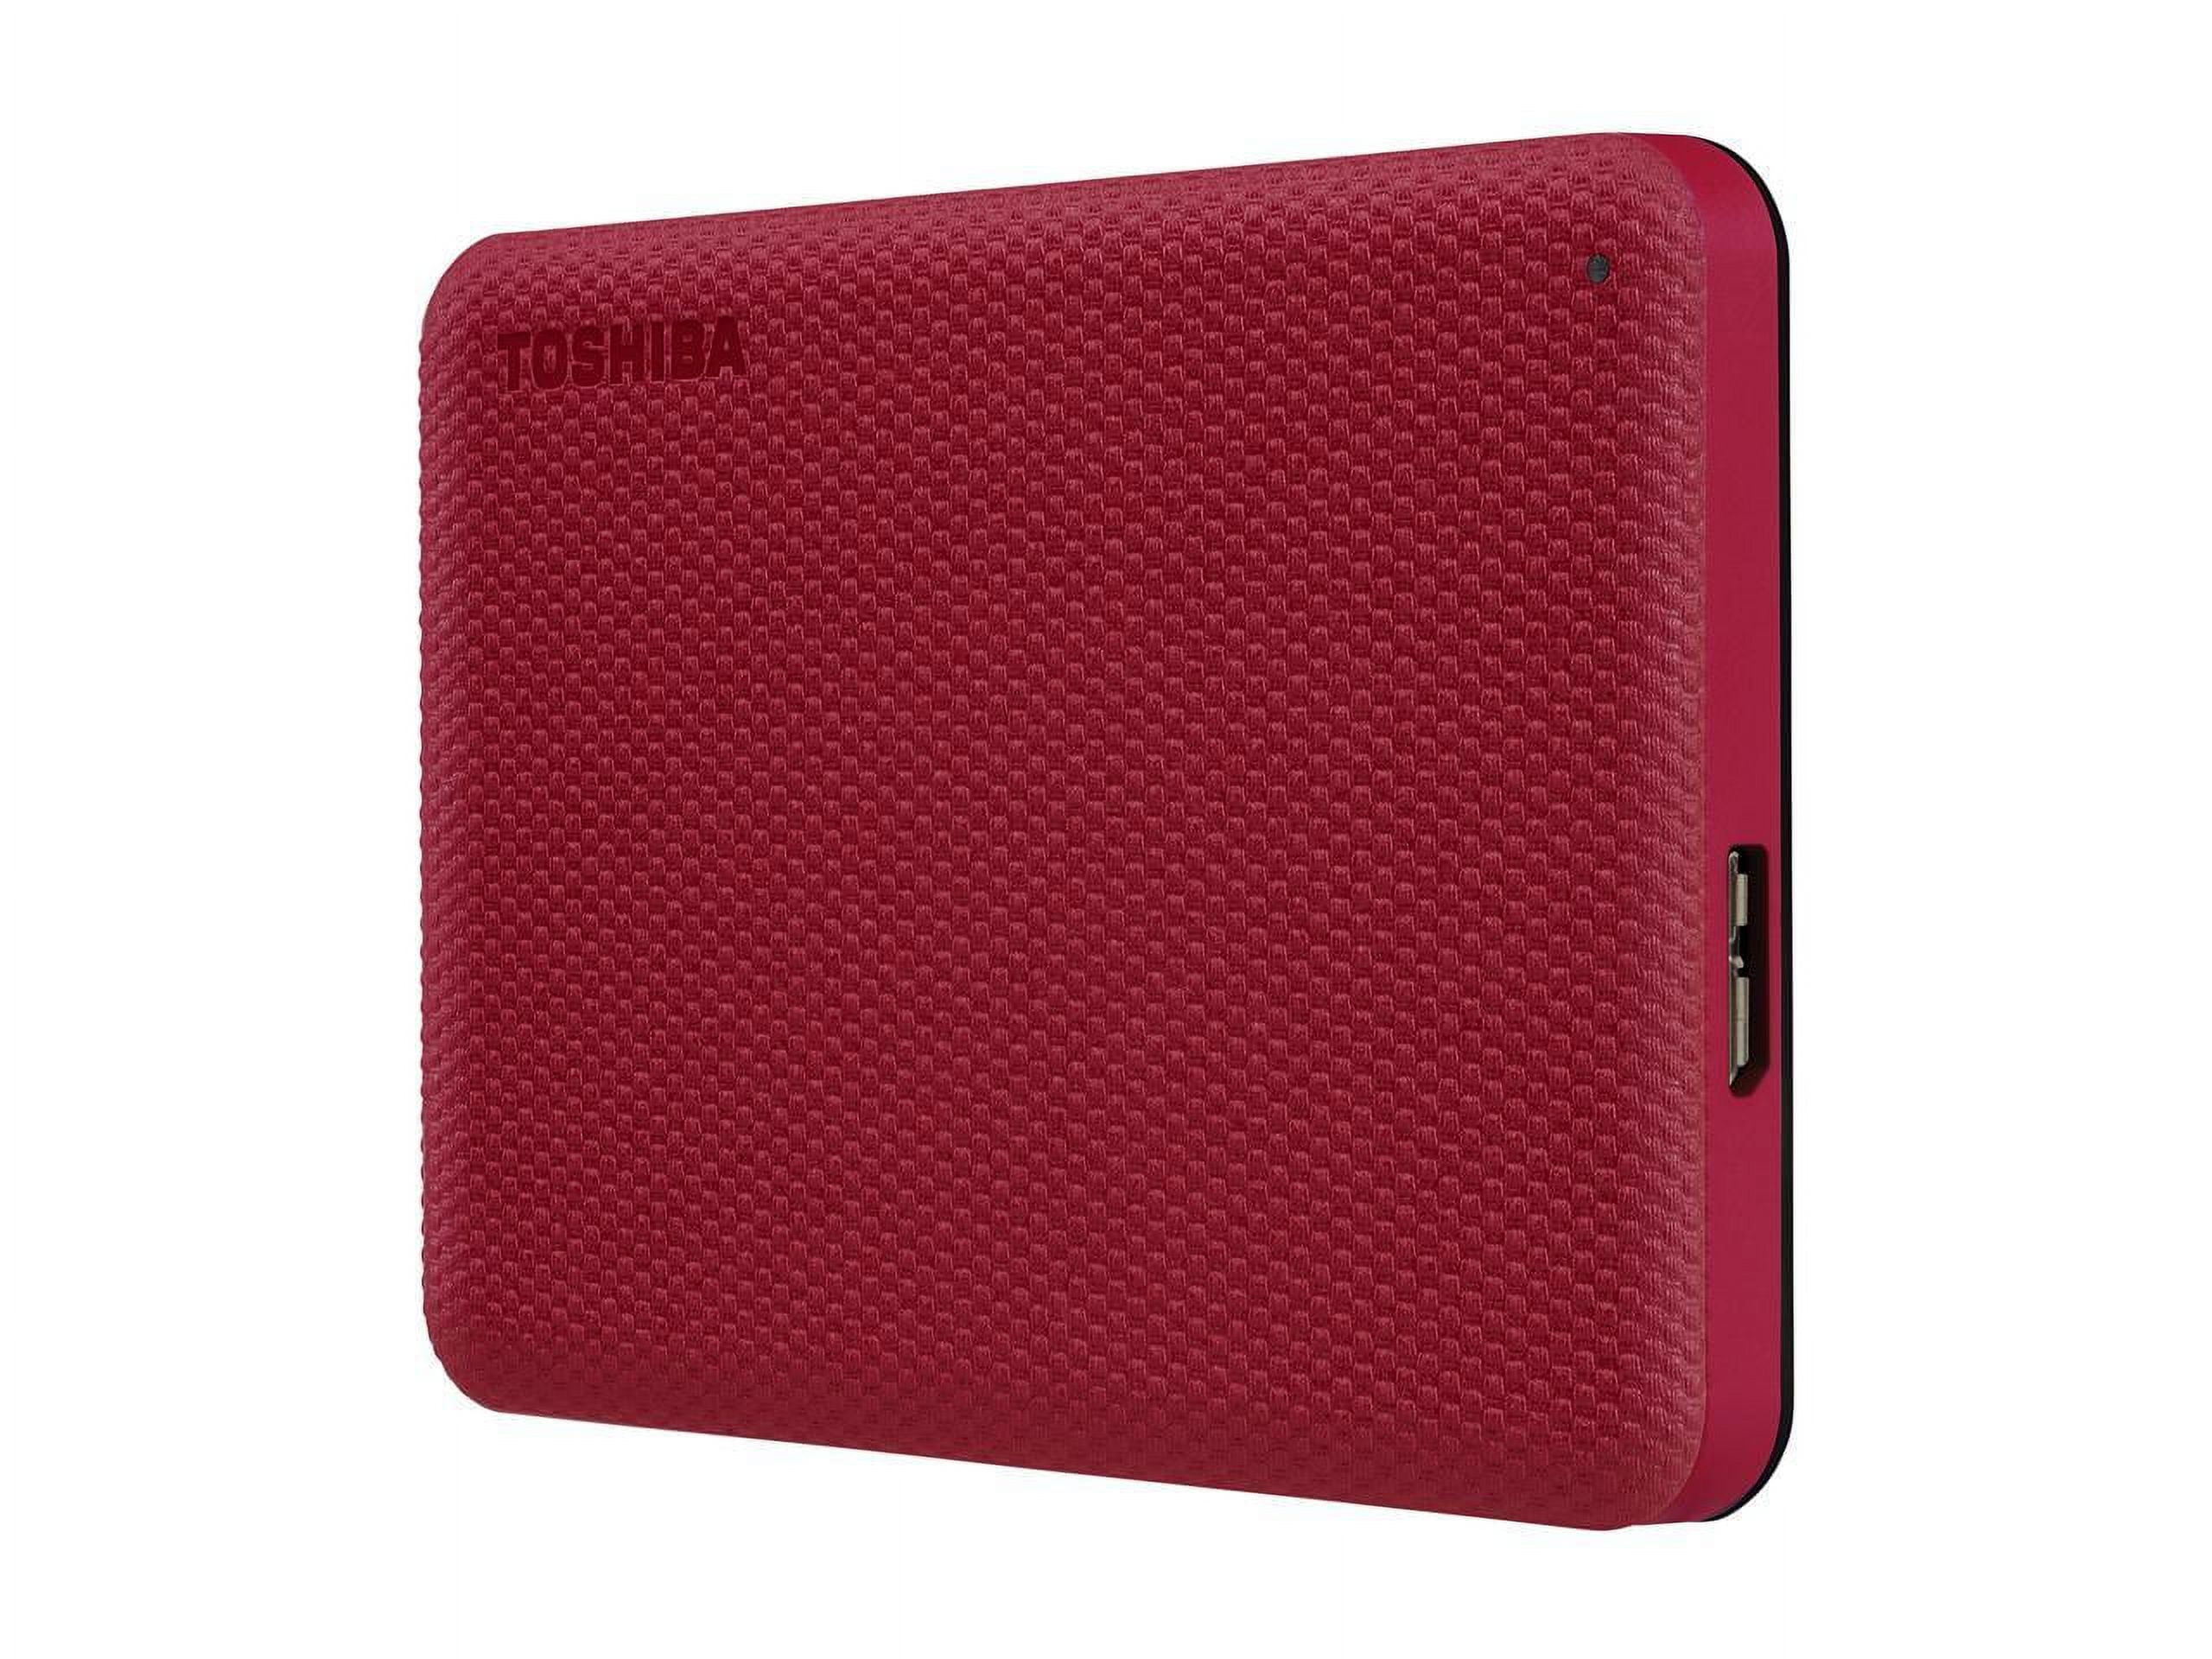 Toshiba Canvio Advance Portable Hard Drive 1TB RED